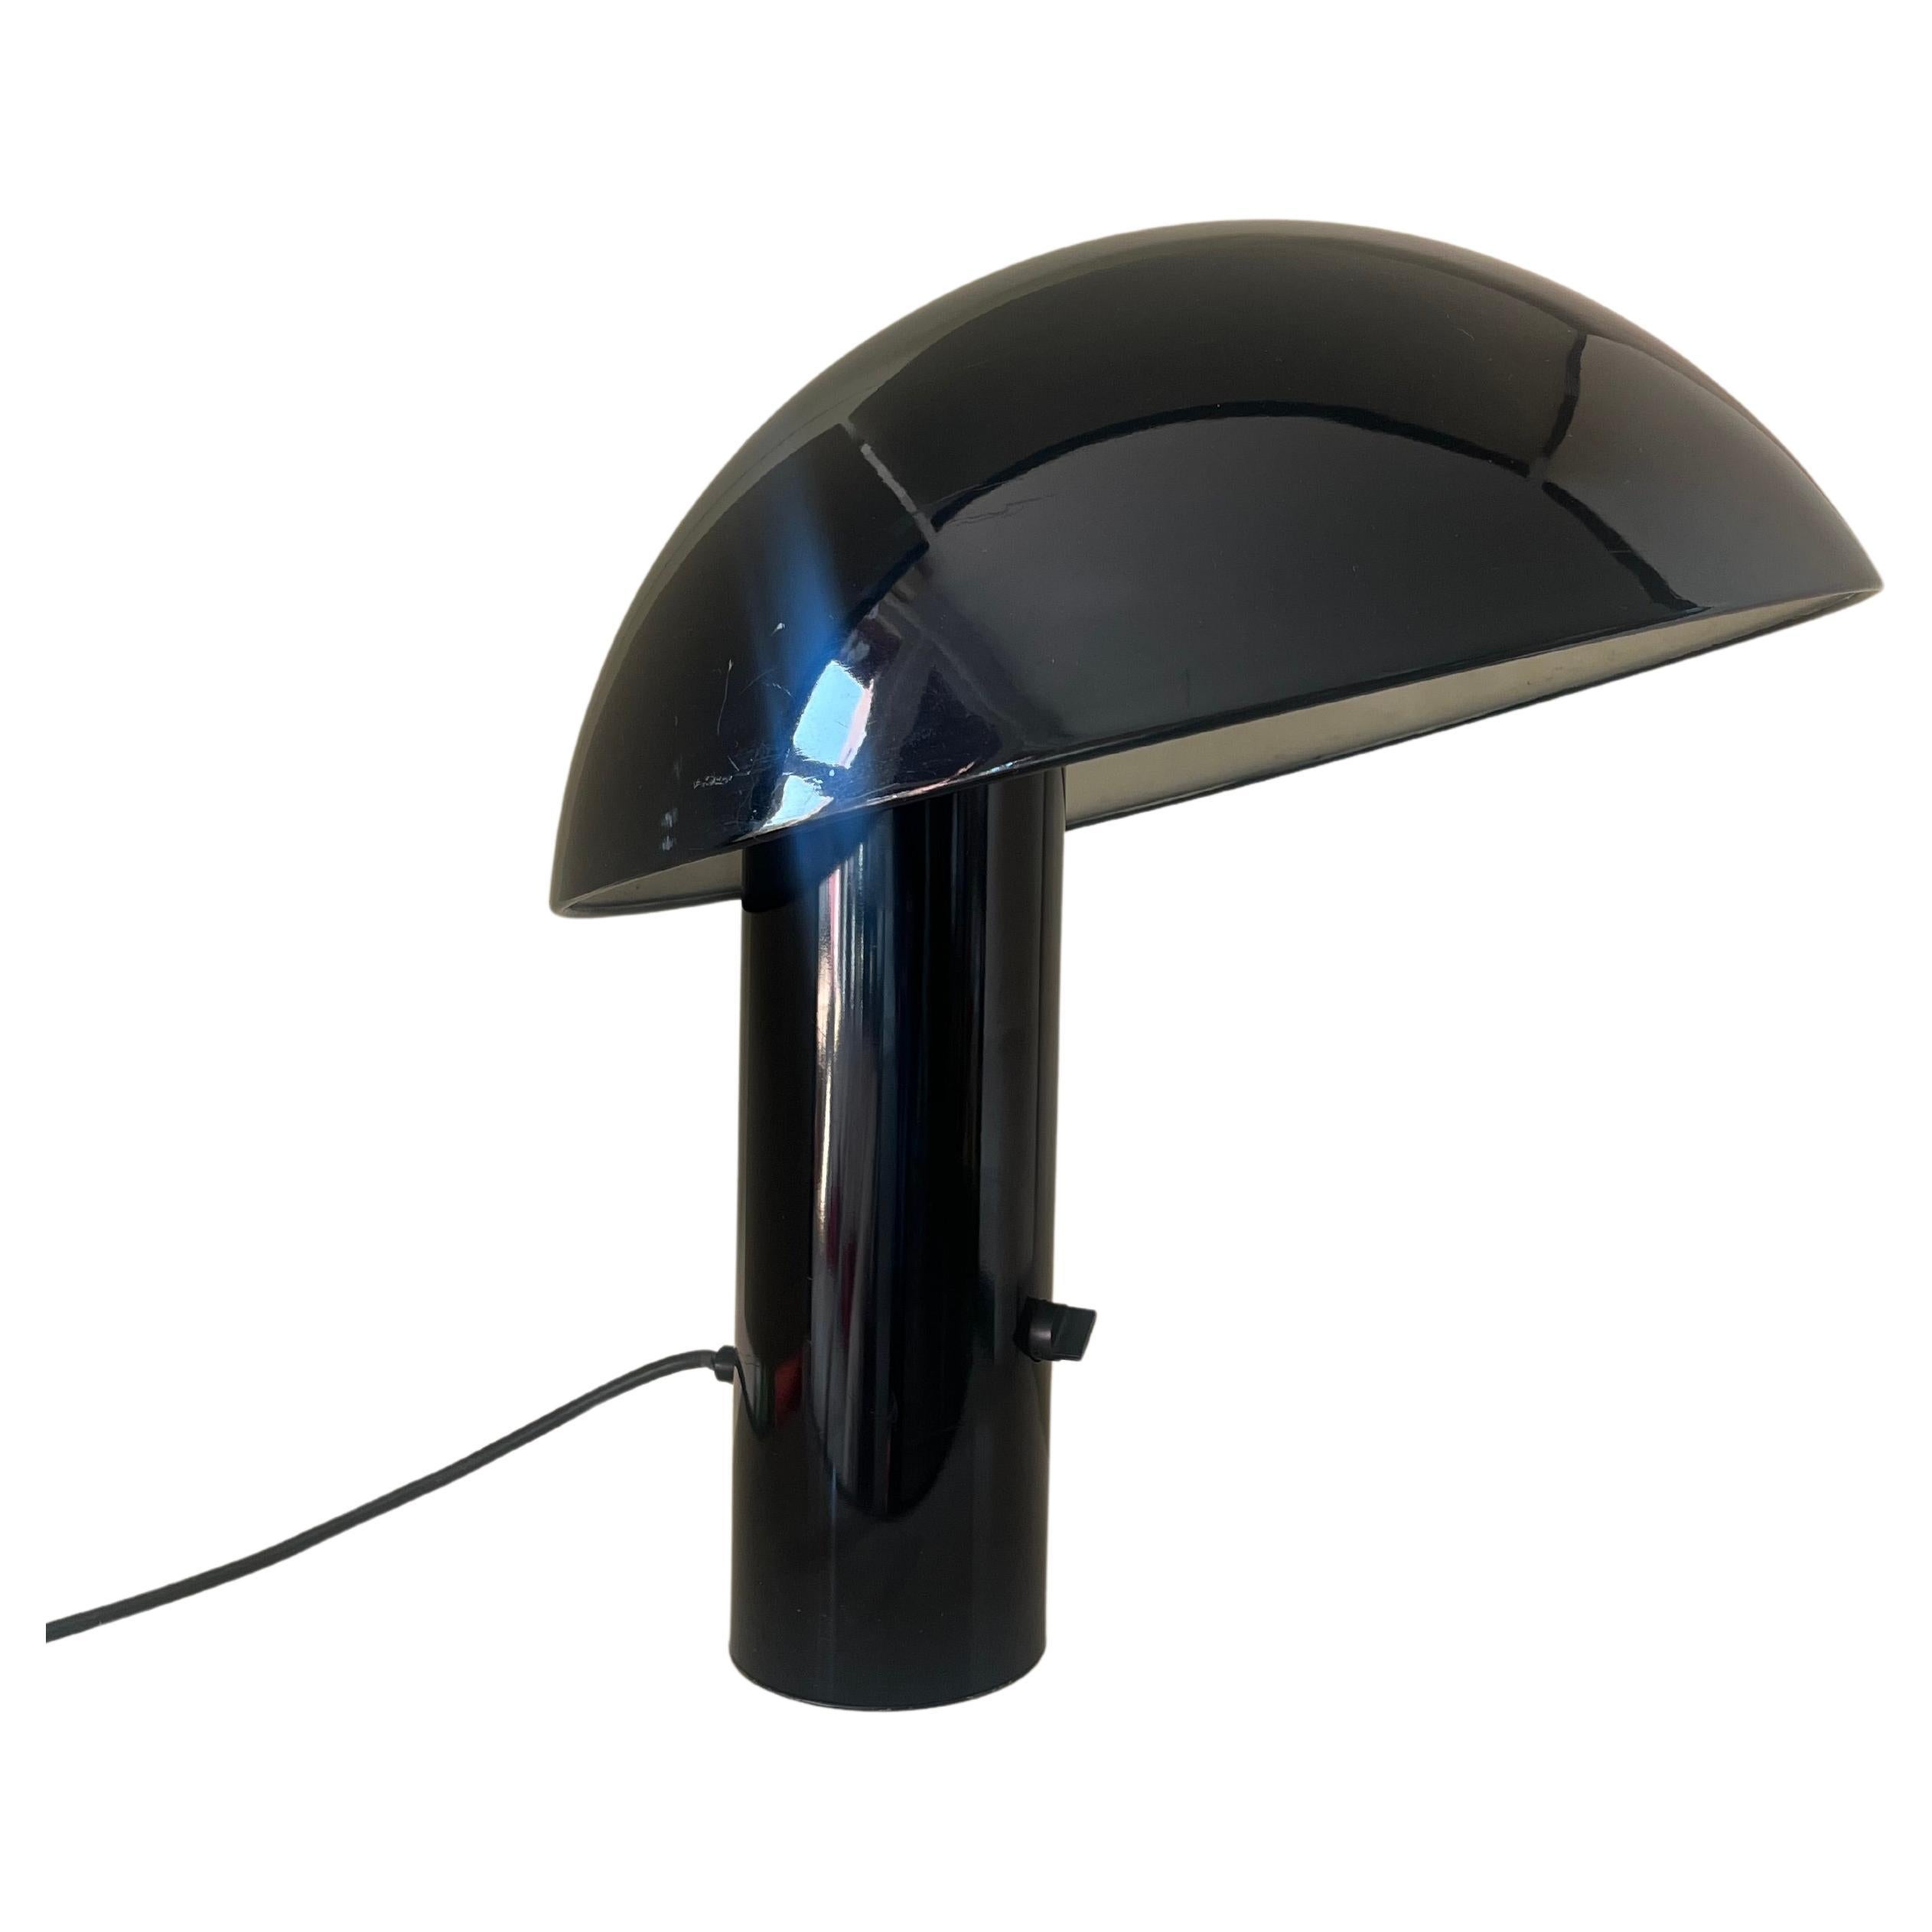 Black table lamp mod. Vaga - Franco Mirenzi for Valenti Luce